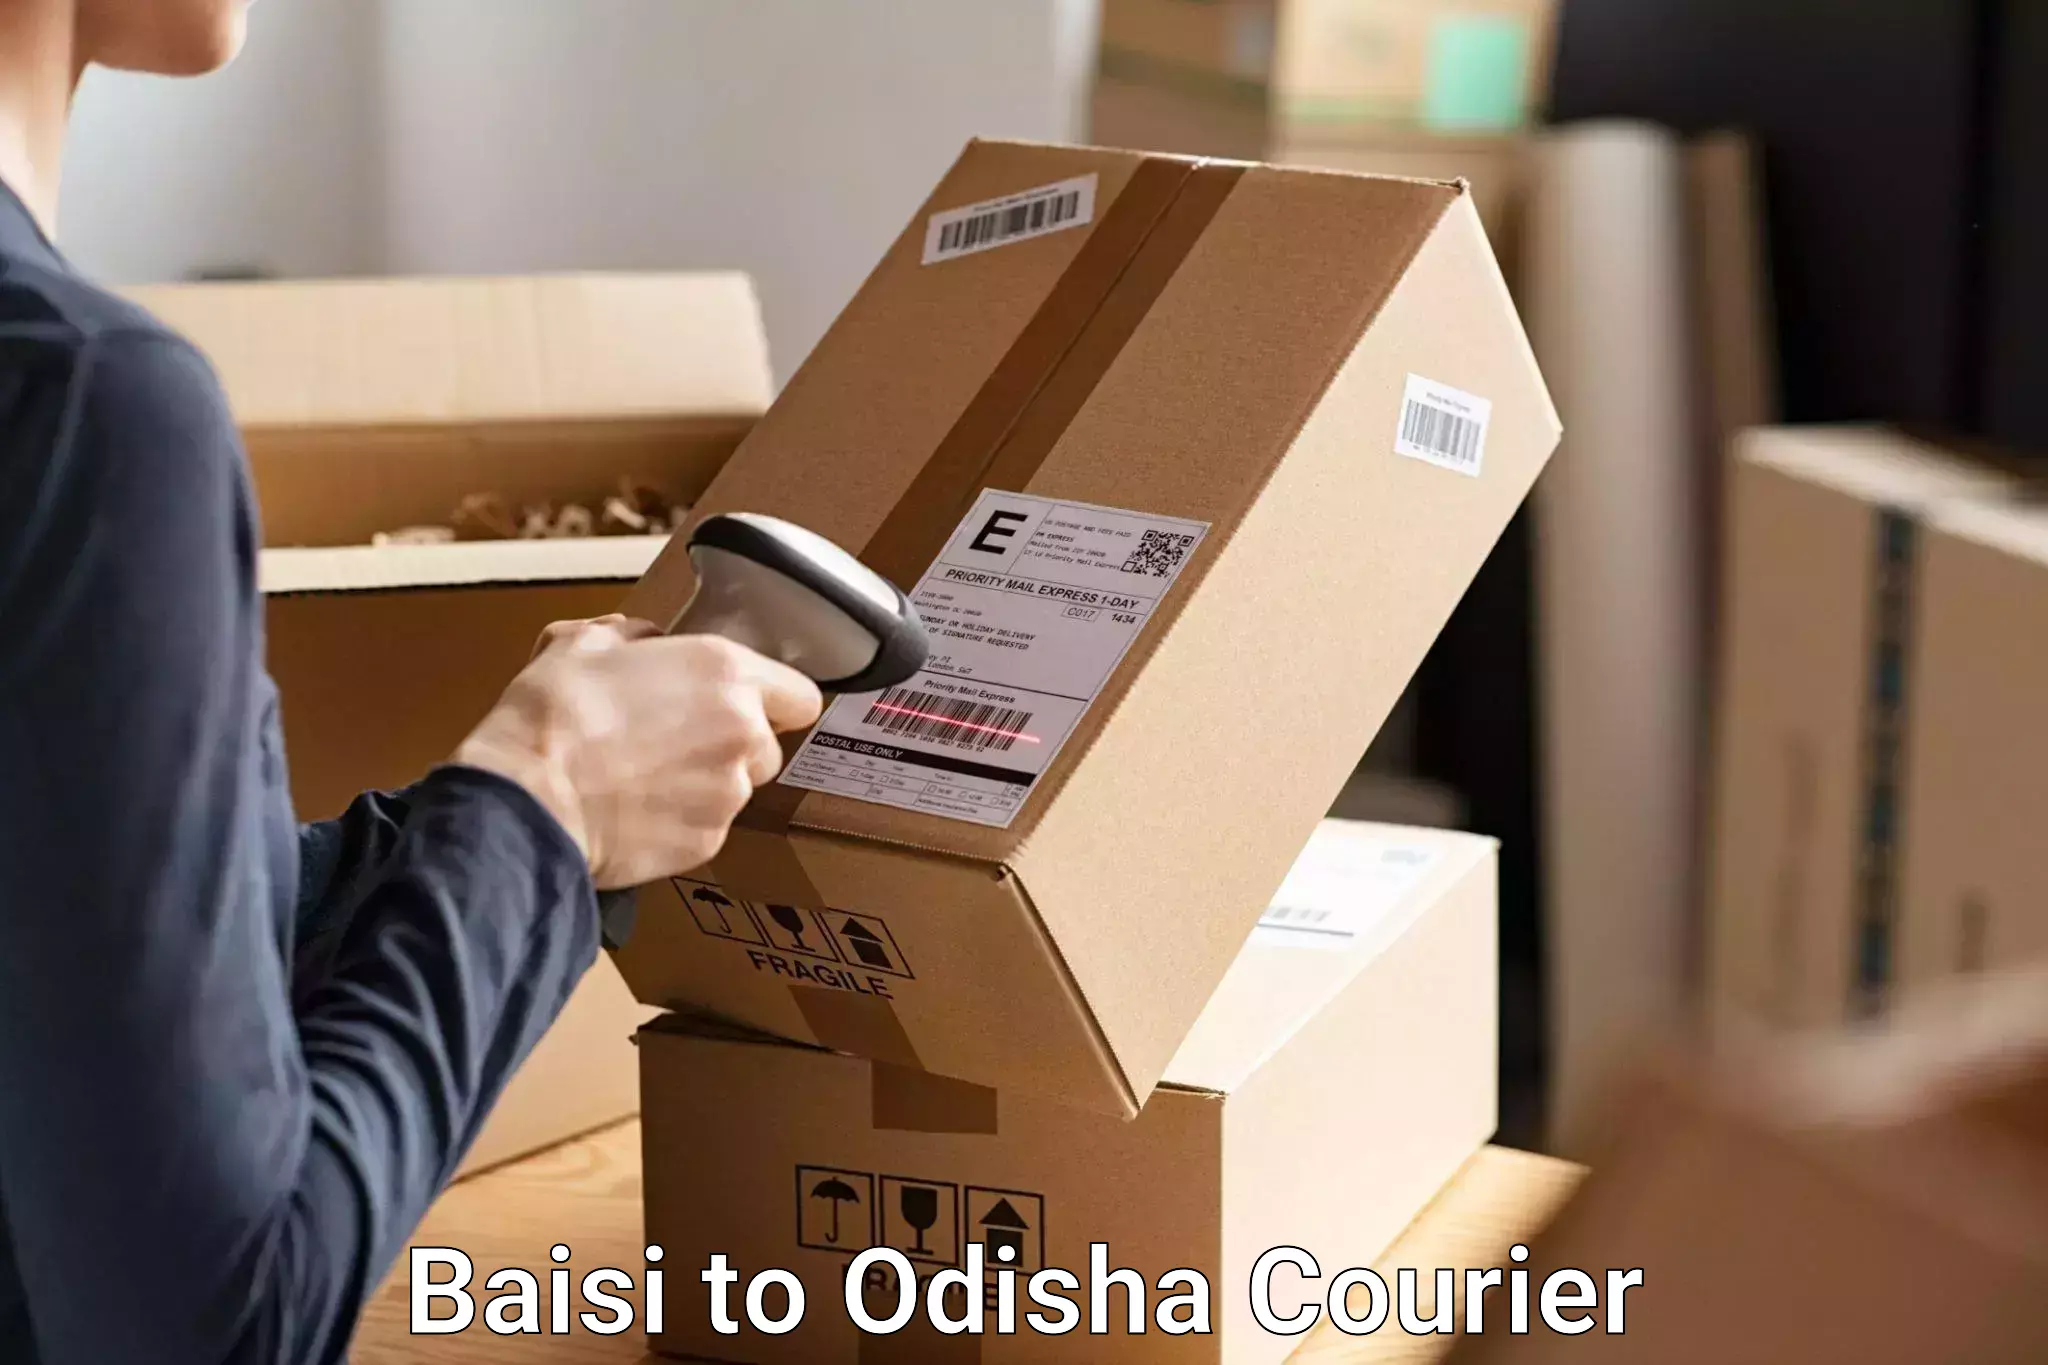 Luggage transit service Baisi to Odisha